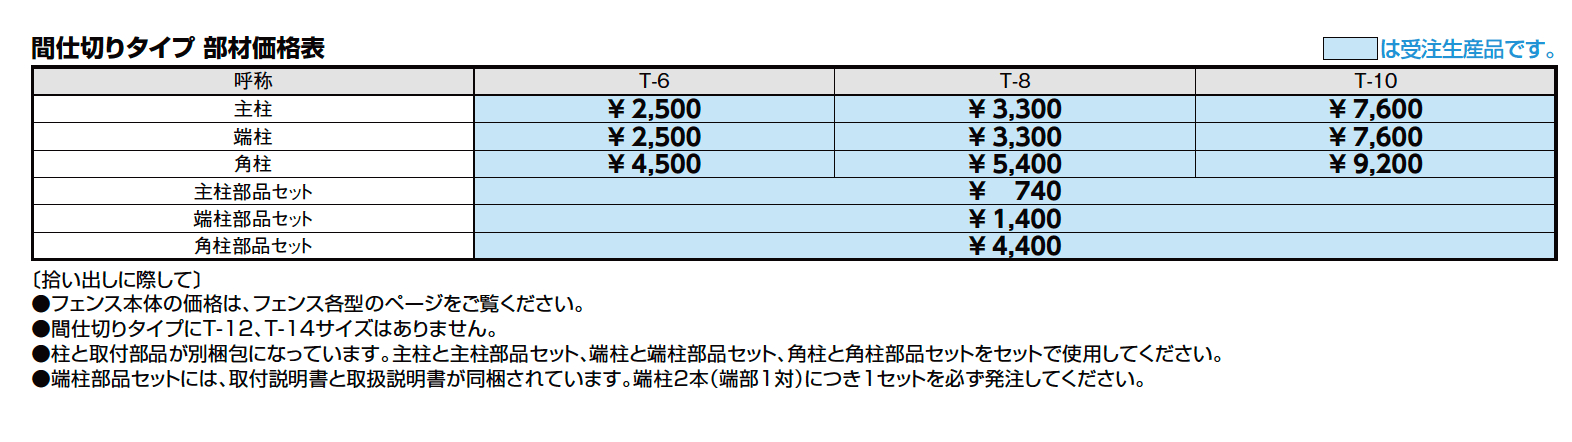 フェンスAB 間仕切りタイプ(特注対応)【2023年版】_価格_1